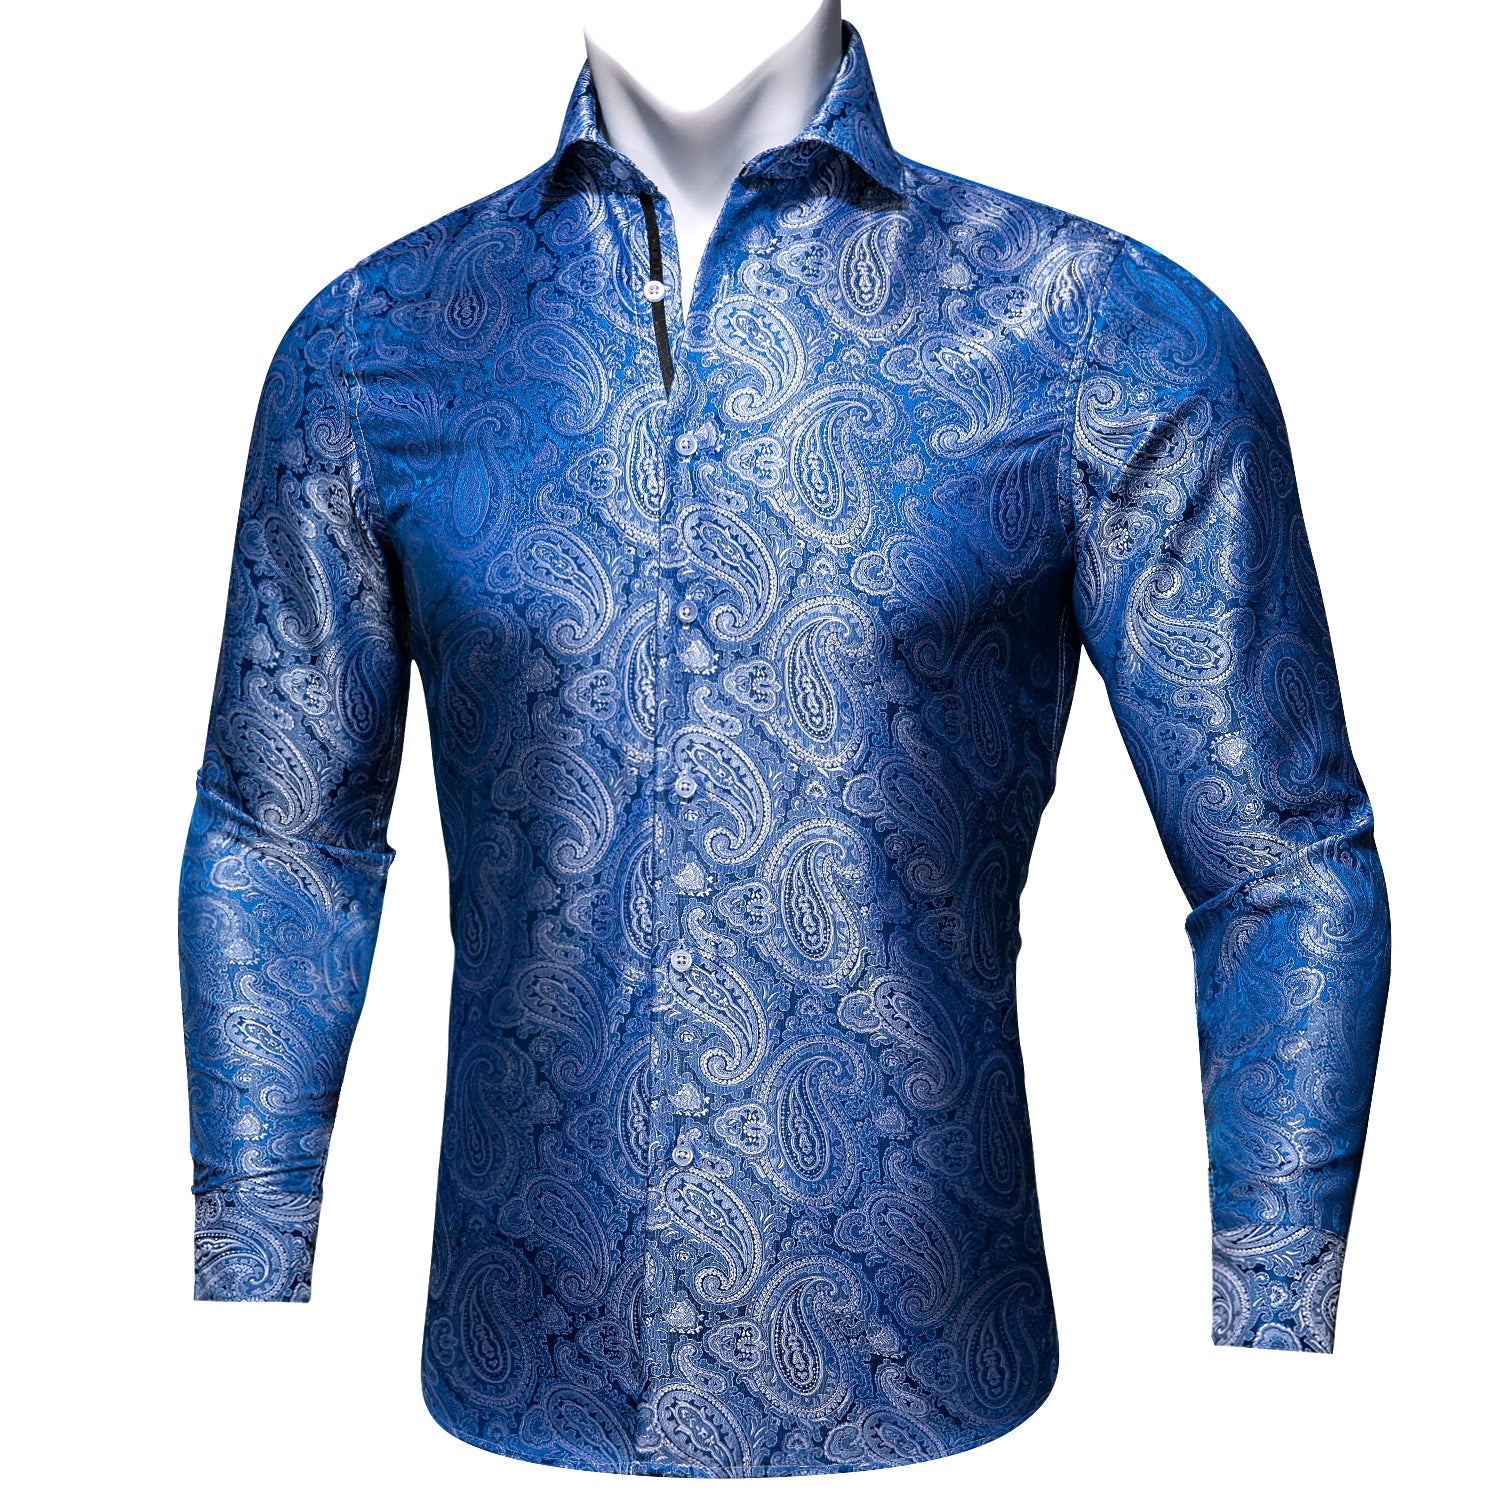 Barry.wang Blue Floral Silk Shirt